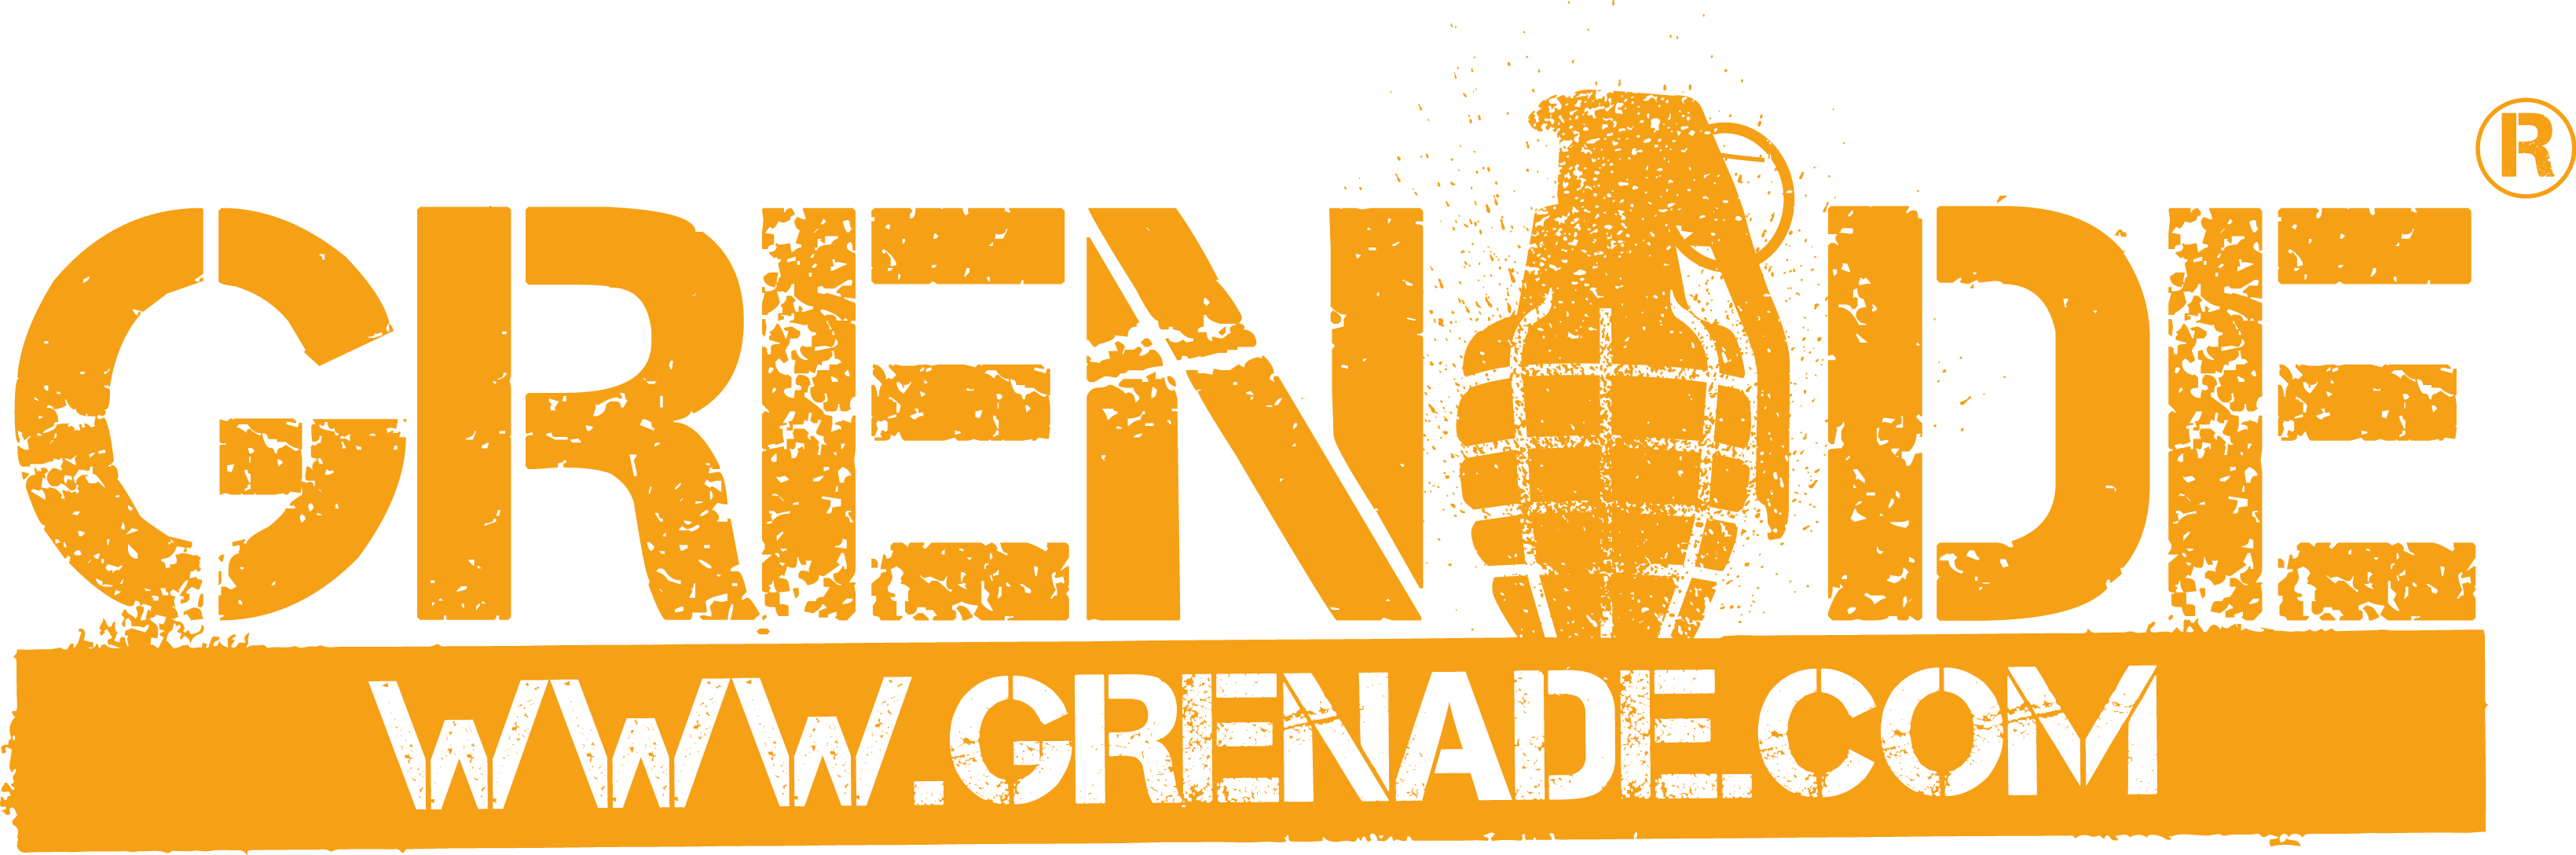 Grenade Logo - Grenade Logo Png National Enterprise Challenge